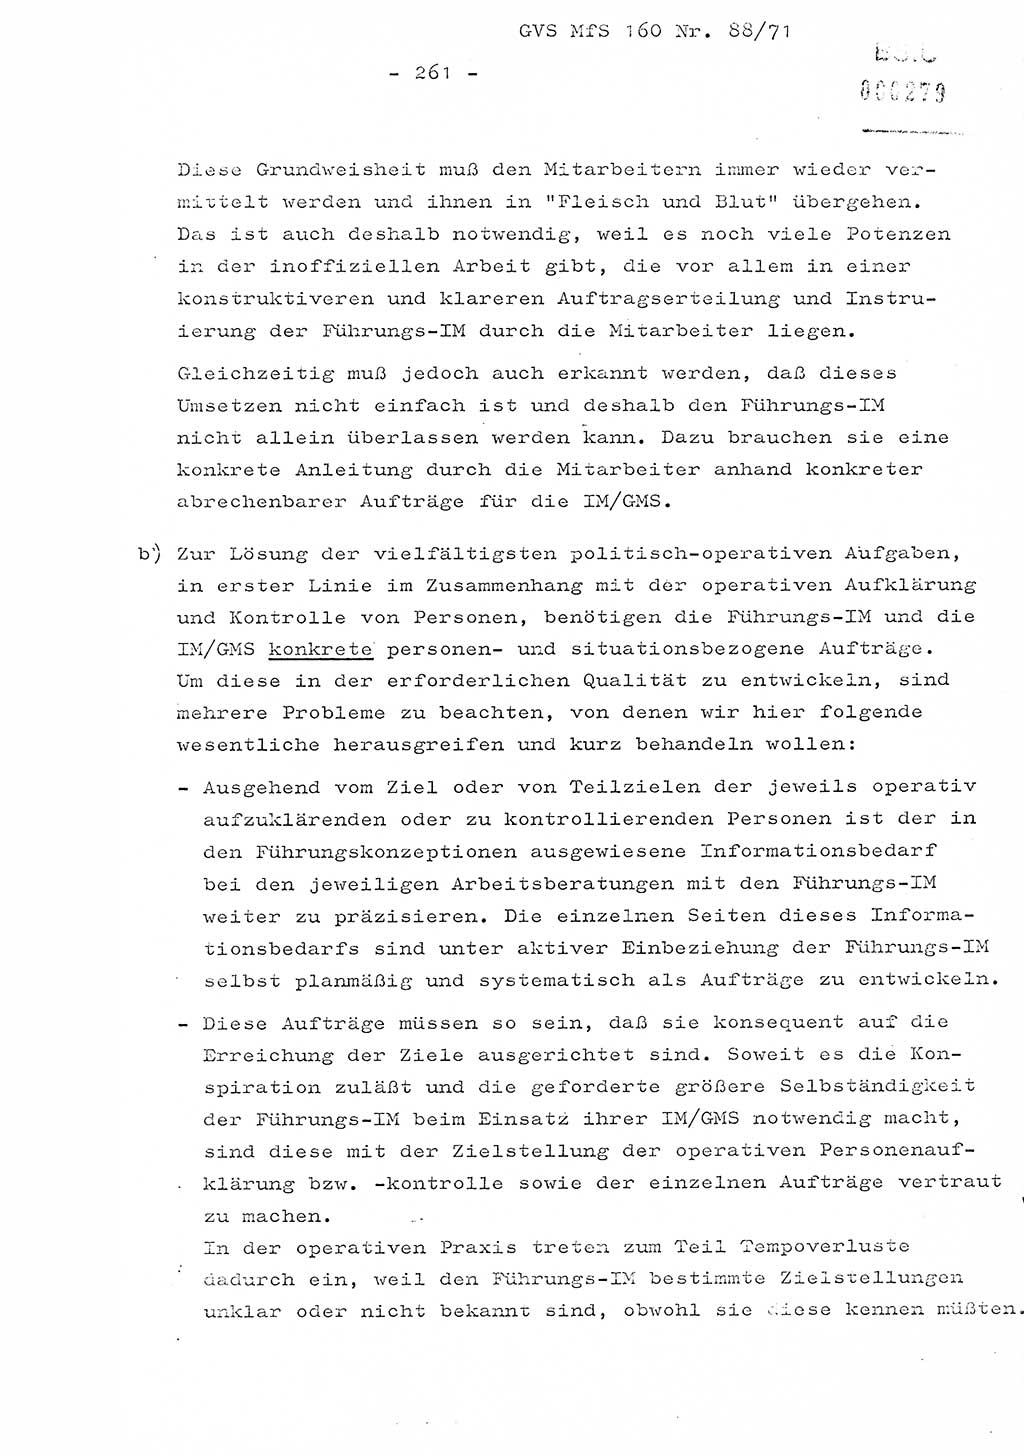 Dissertation Oberstleutnant Josef Schwarz (BV Schwerin), Major Fritz Amm (JHS), Hauptmann Peter Gräßler (JHS), Ministerium für Staatssicherheit (MfS) [Deutsche Demokratische Republik (DDR)], Juristische Hochschule (JHS), Geheime Verschlußsache (GVS) 160-88/71, Potsdam 1972, Seite 261 (Diss. MfS DDR JHS GVS 160-88/71 1972, S. 261)